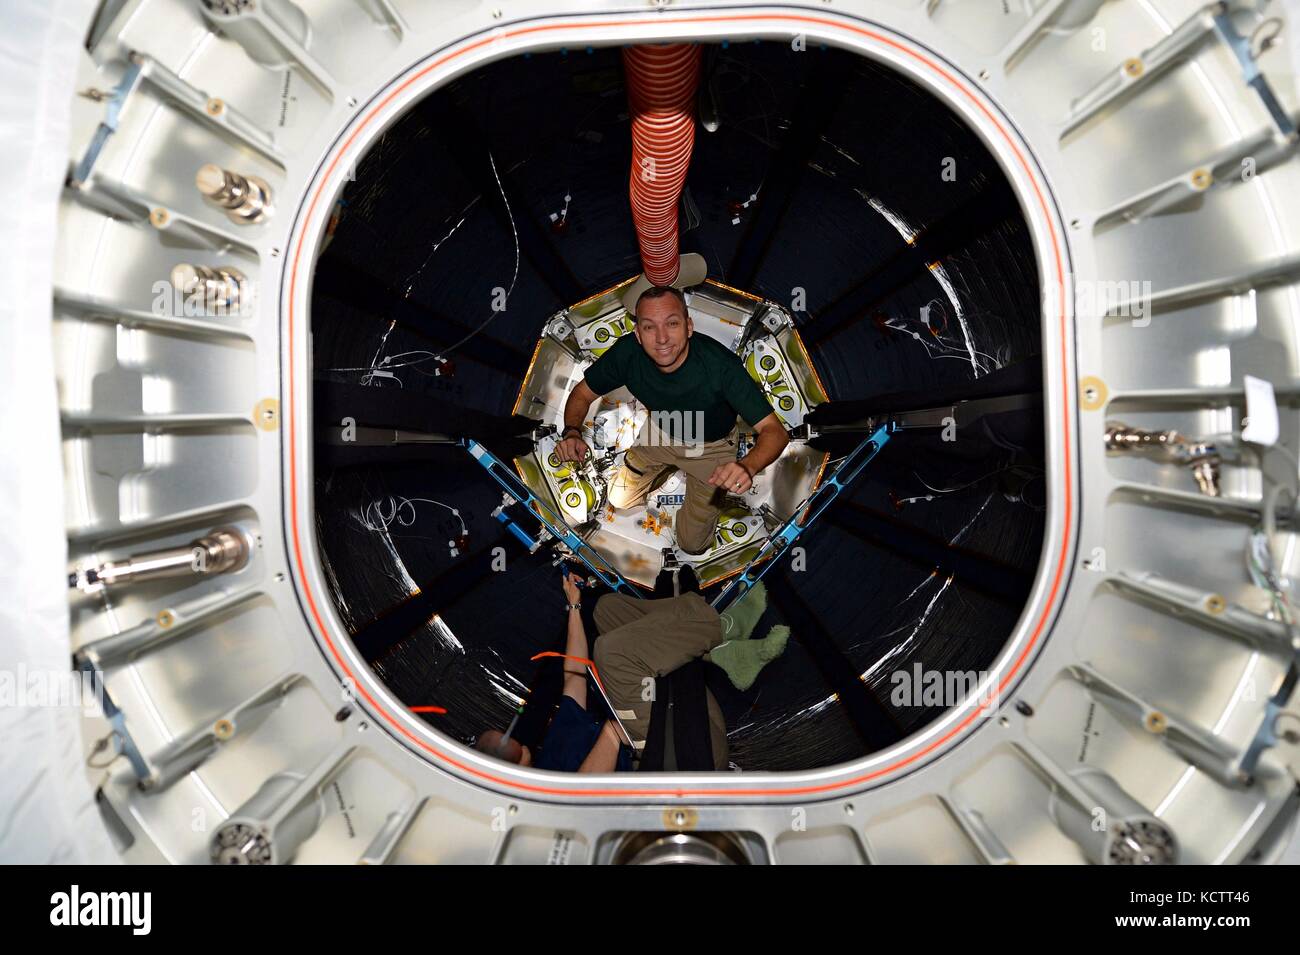 Stazione spaziale internazionale expedition 53 astronauta americano jack fischer ispeziona la parte interna del modulo di fascio agosto 2, 2017 in orbita intorno alla terra. il fascio è un gonfiabile inoltre collegato alla stazione spaziale in fase di valutazione. Foto Stock